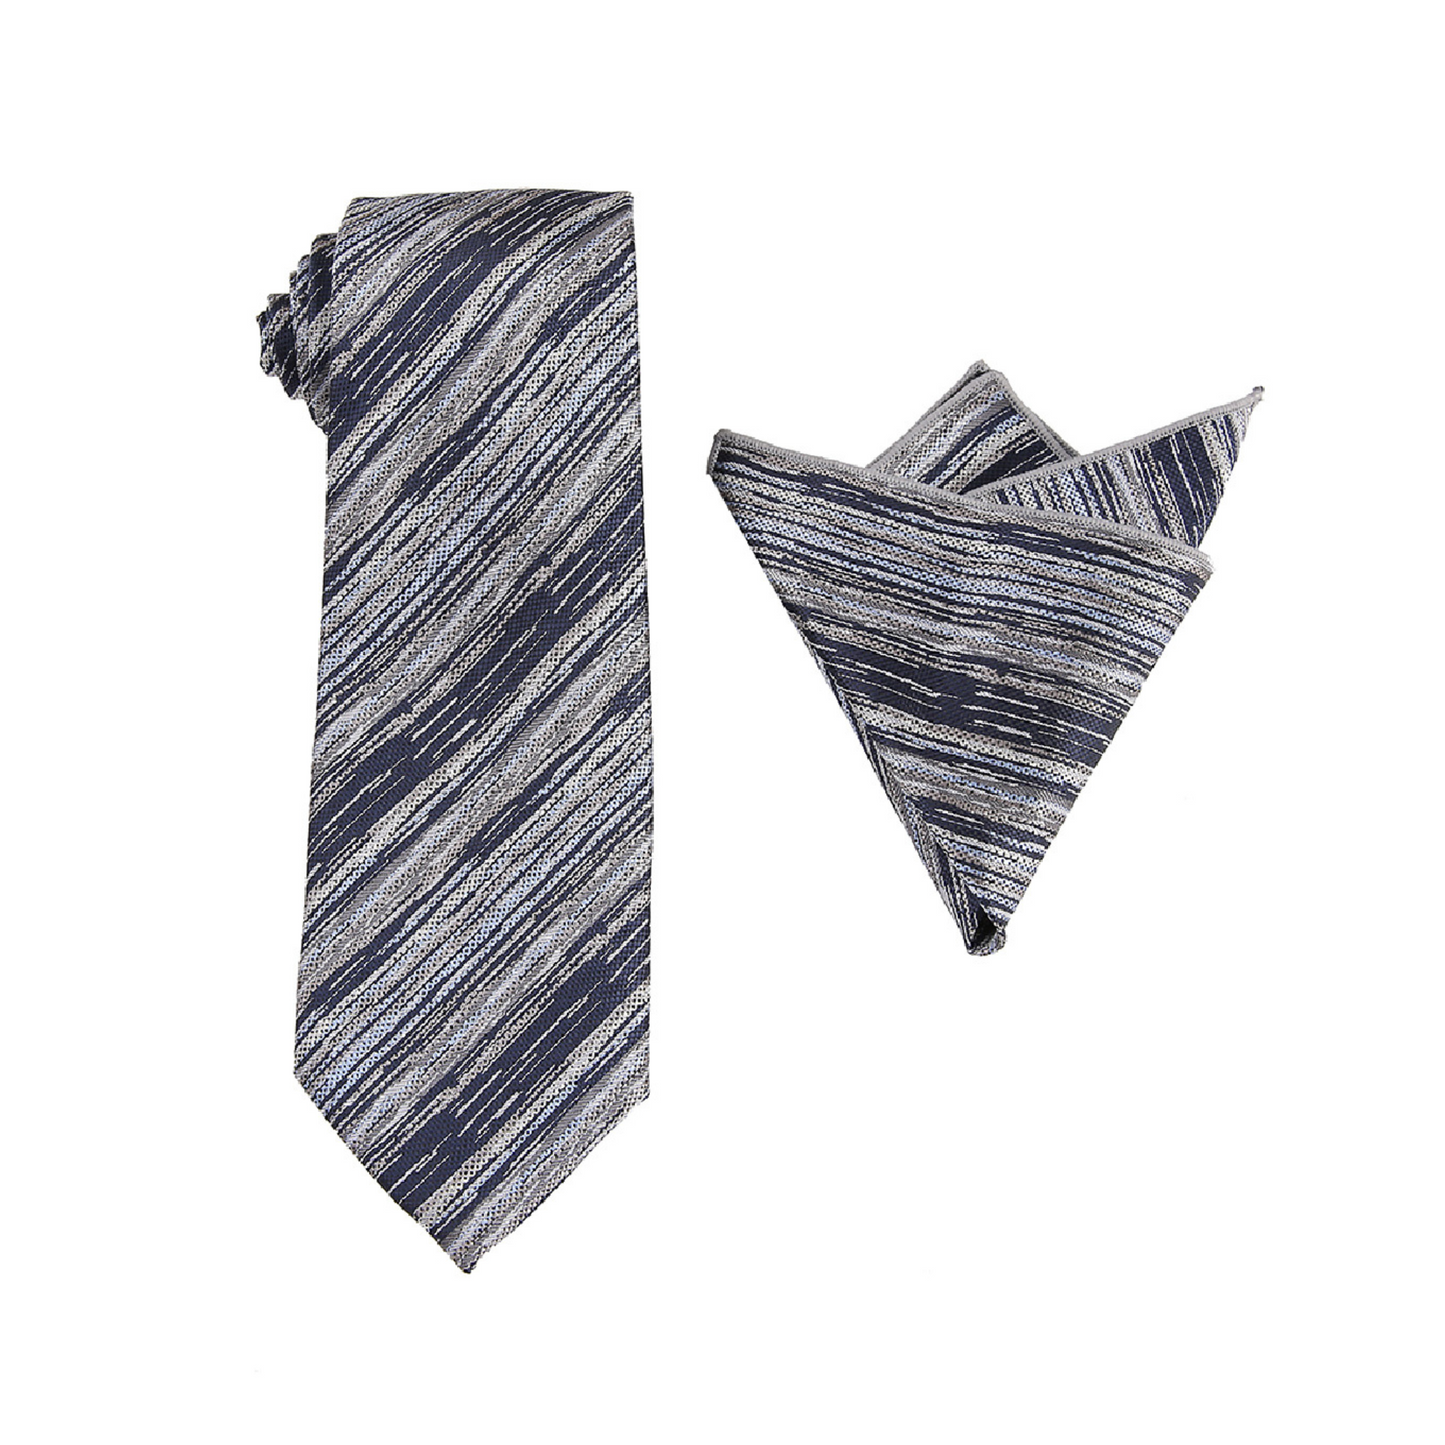 Pino Baldini Men's Striped Ties (3 FOR $30)